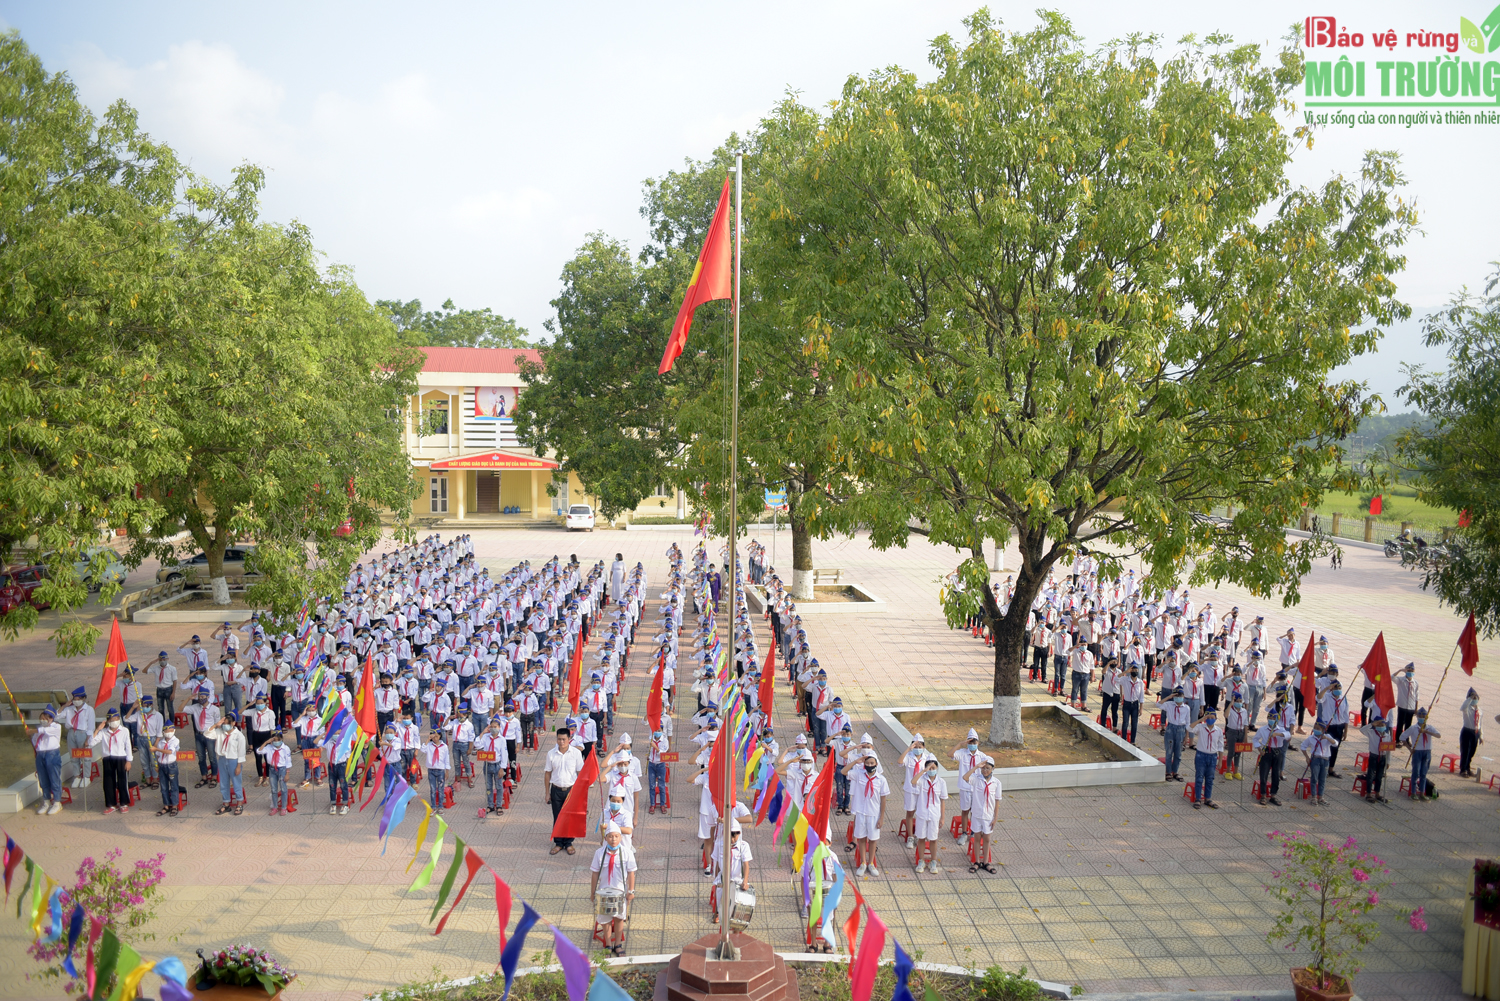 Lễ khai giảng tại trường THCS Thi trấn Hoa Sơn, Lập Thạch, Vĩnh Phúc. Ảnh: Nguyễn Nam